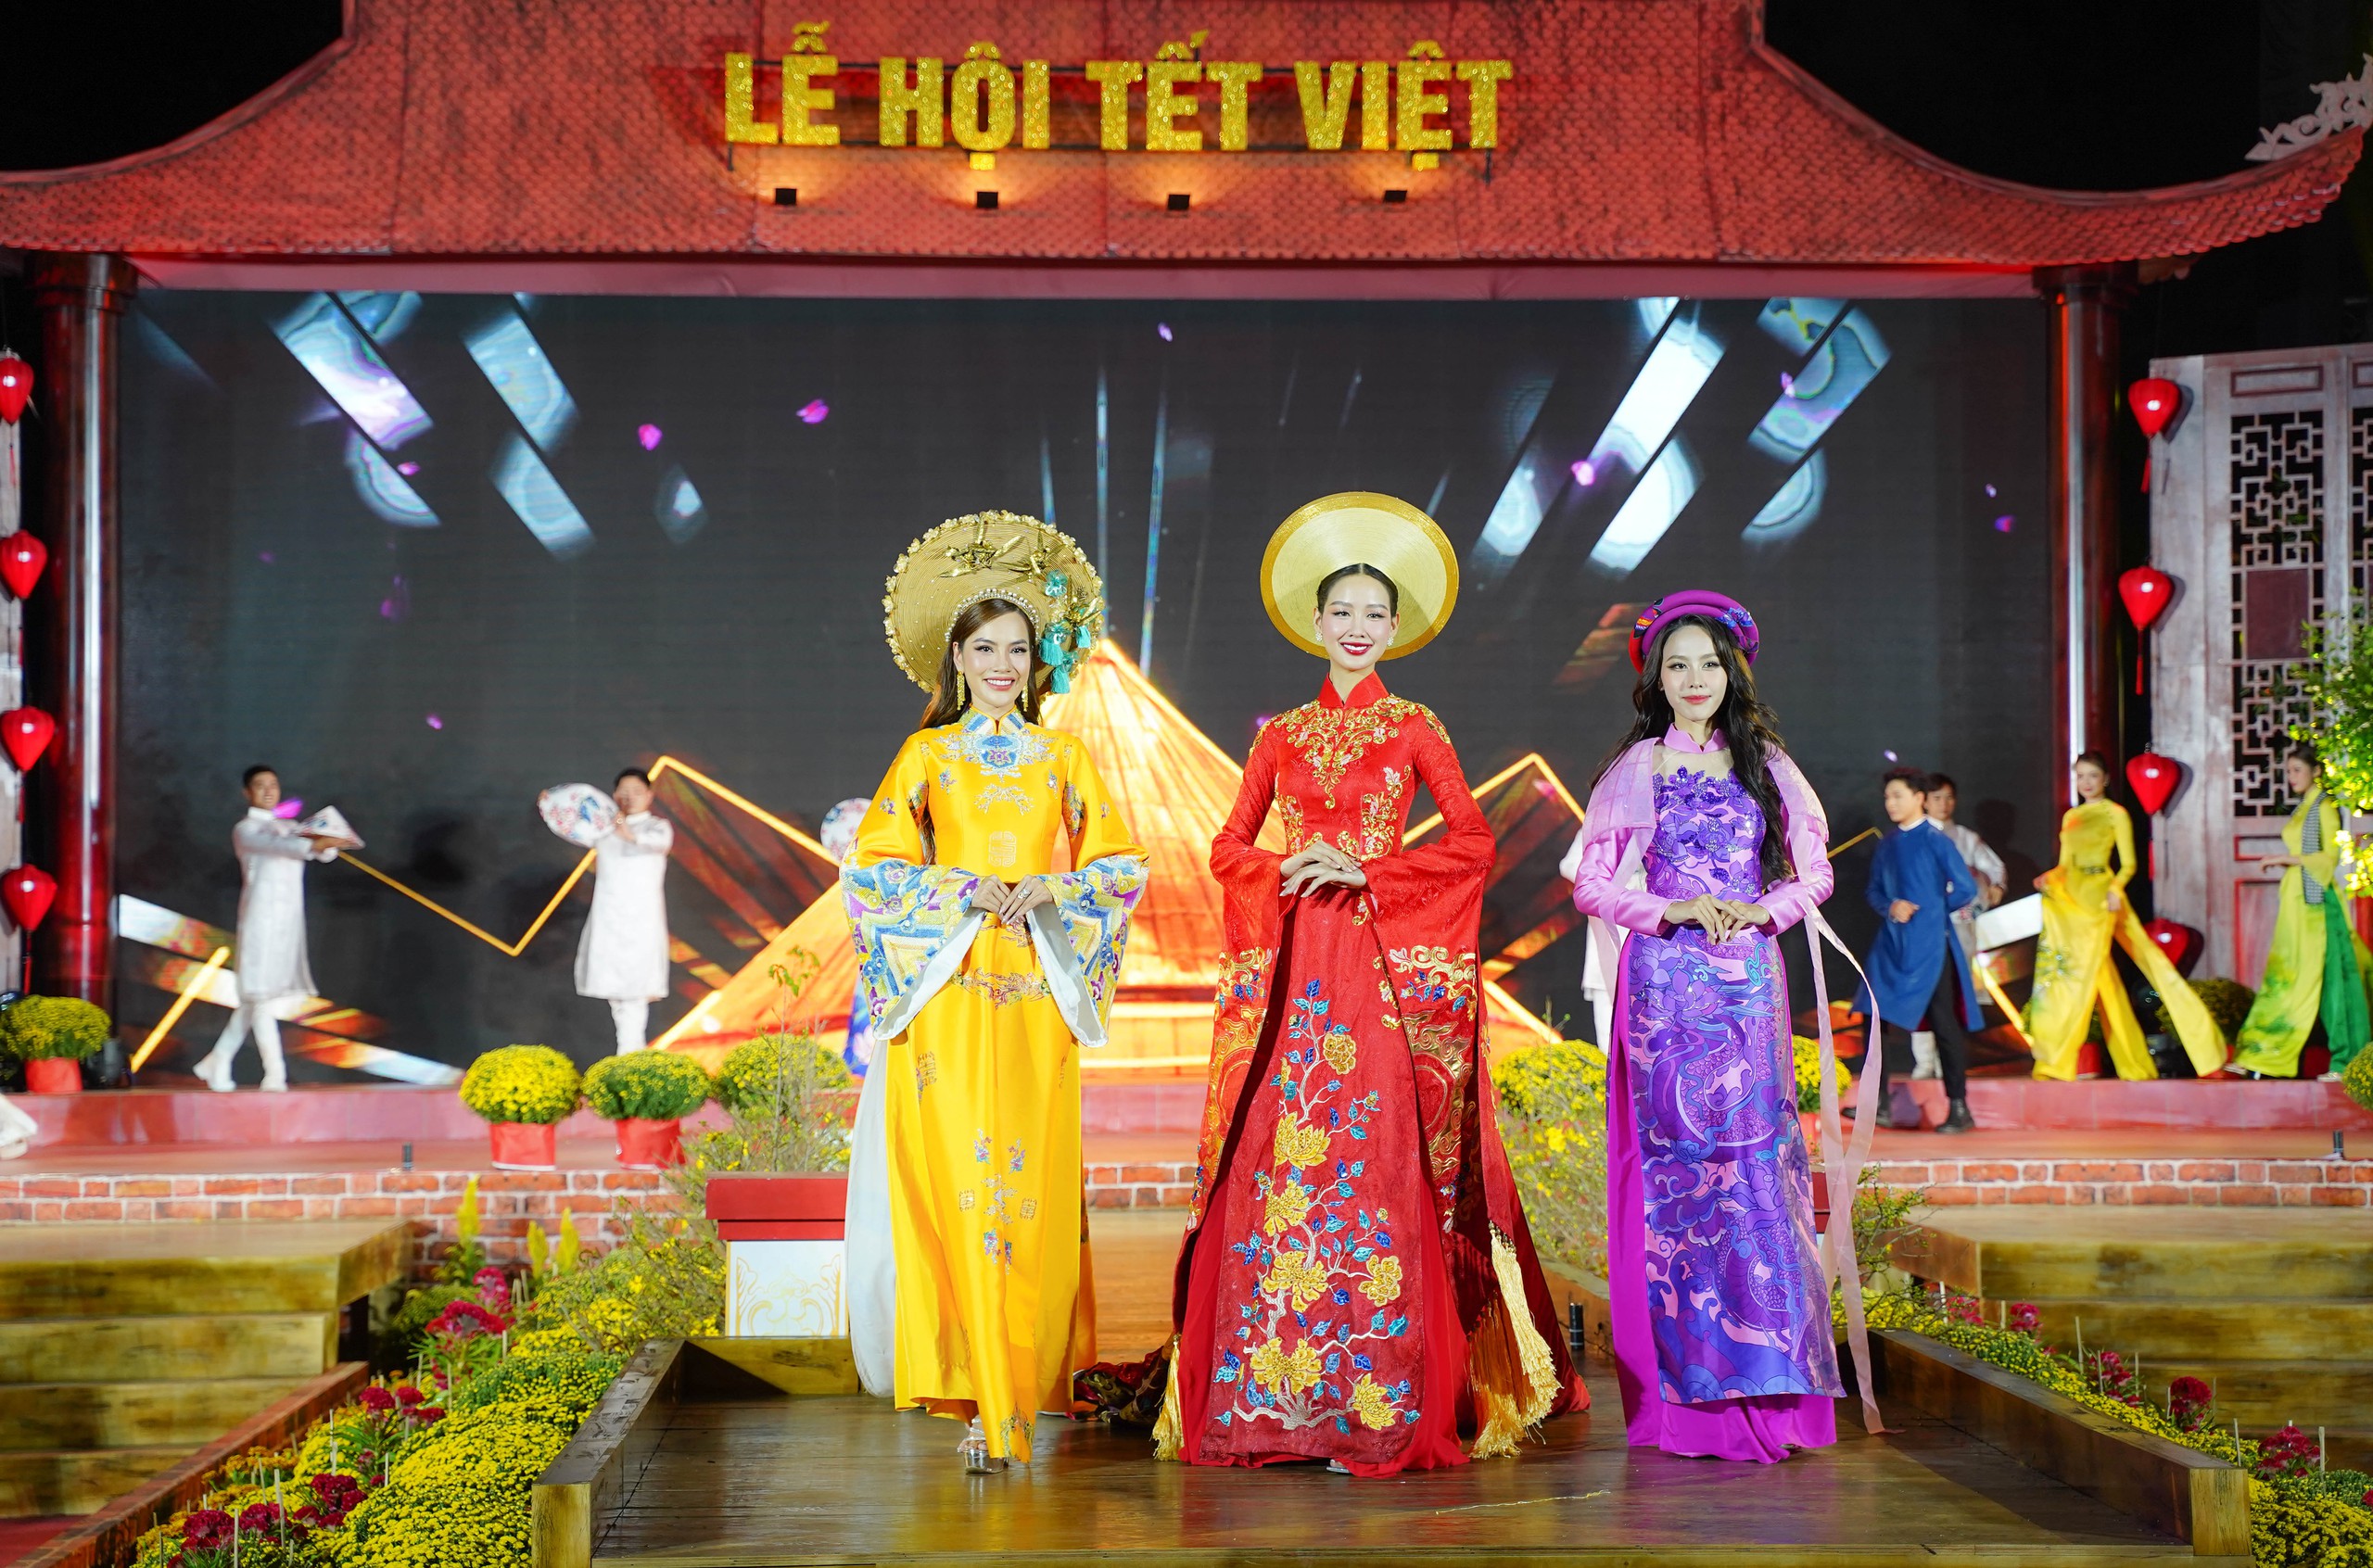 Đến Lễ hội Tết Việt xem lễ dựng cây nêu, cúng tổ tiên, đón giao thừa…- Ảnh 1.